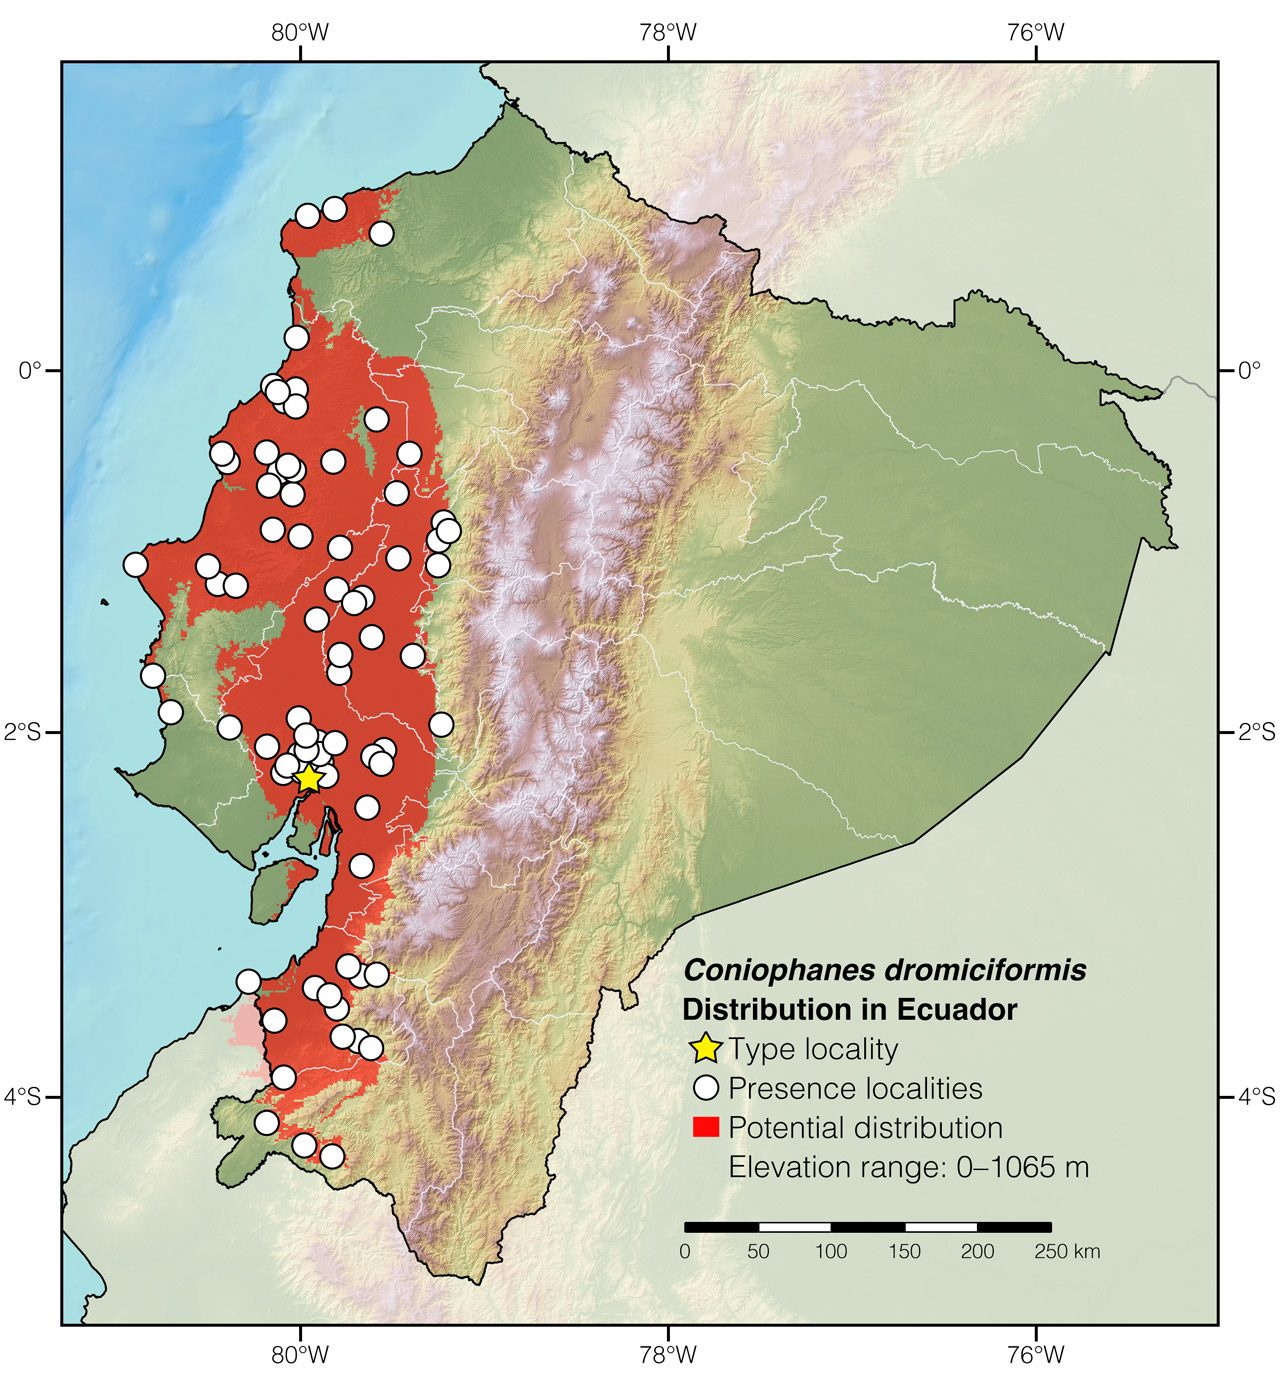 Distribution of Coniophanes dromiciformis in Ecuador